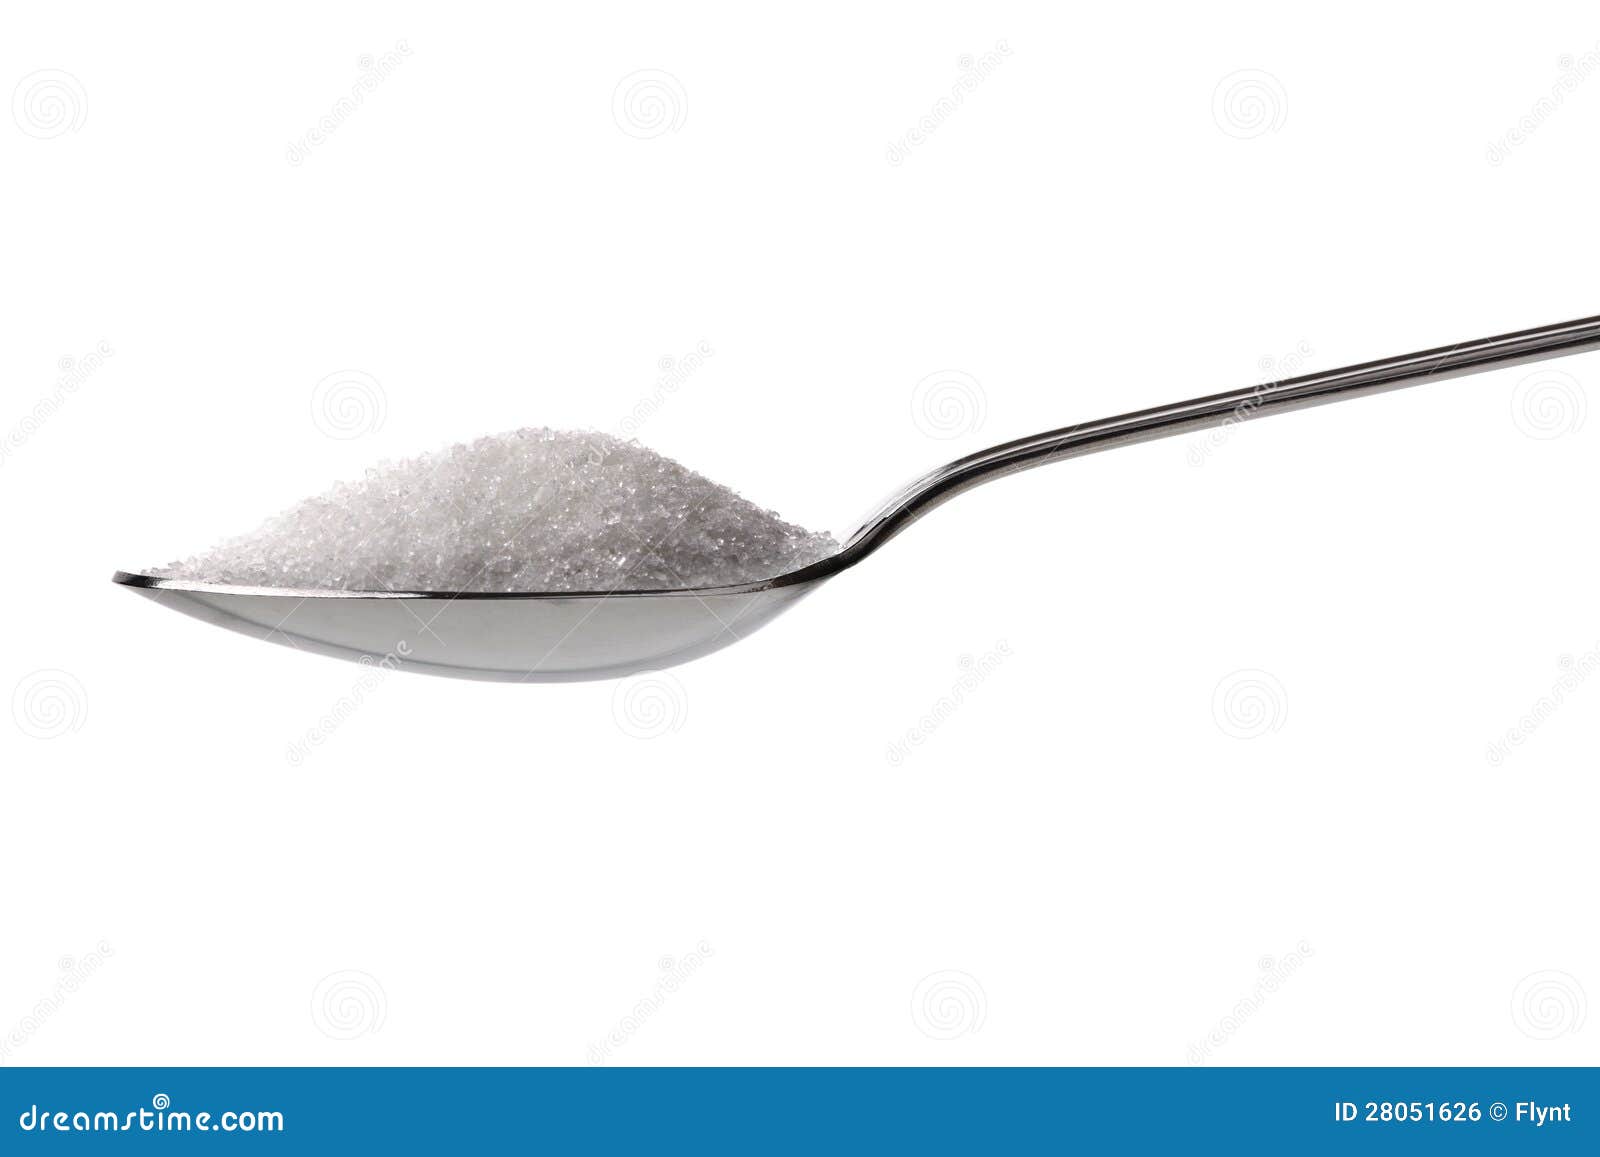 sugar or salt on a teaspoon